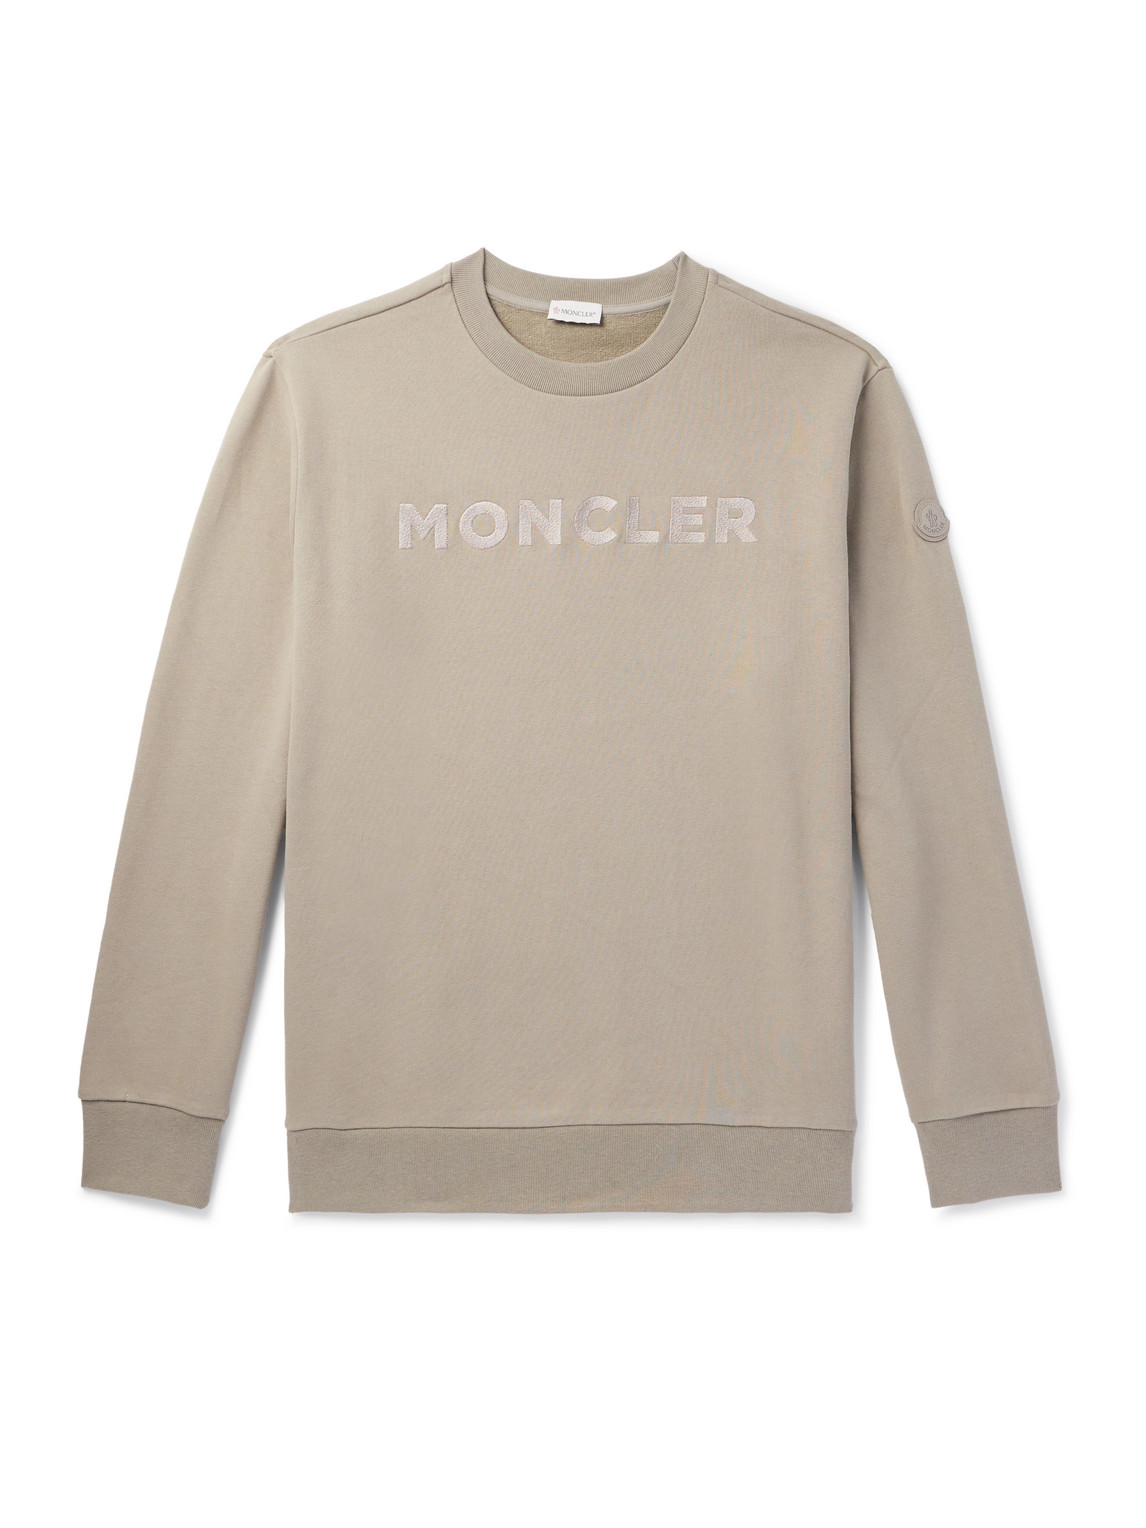 Moncler - Logo-Embroidered Cotton-Jersey Sweatshirt - Men - Neutrals - M von Moncler